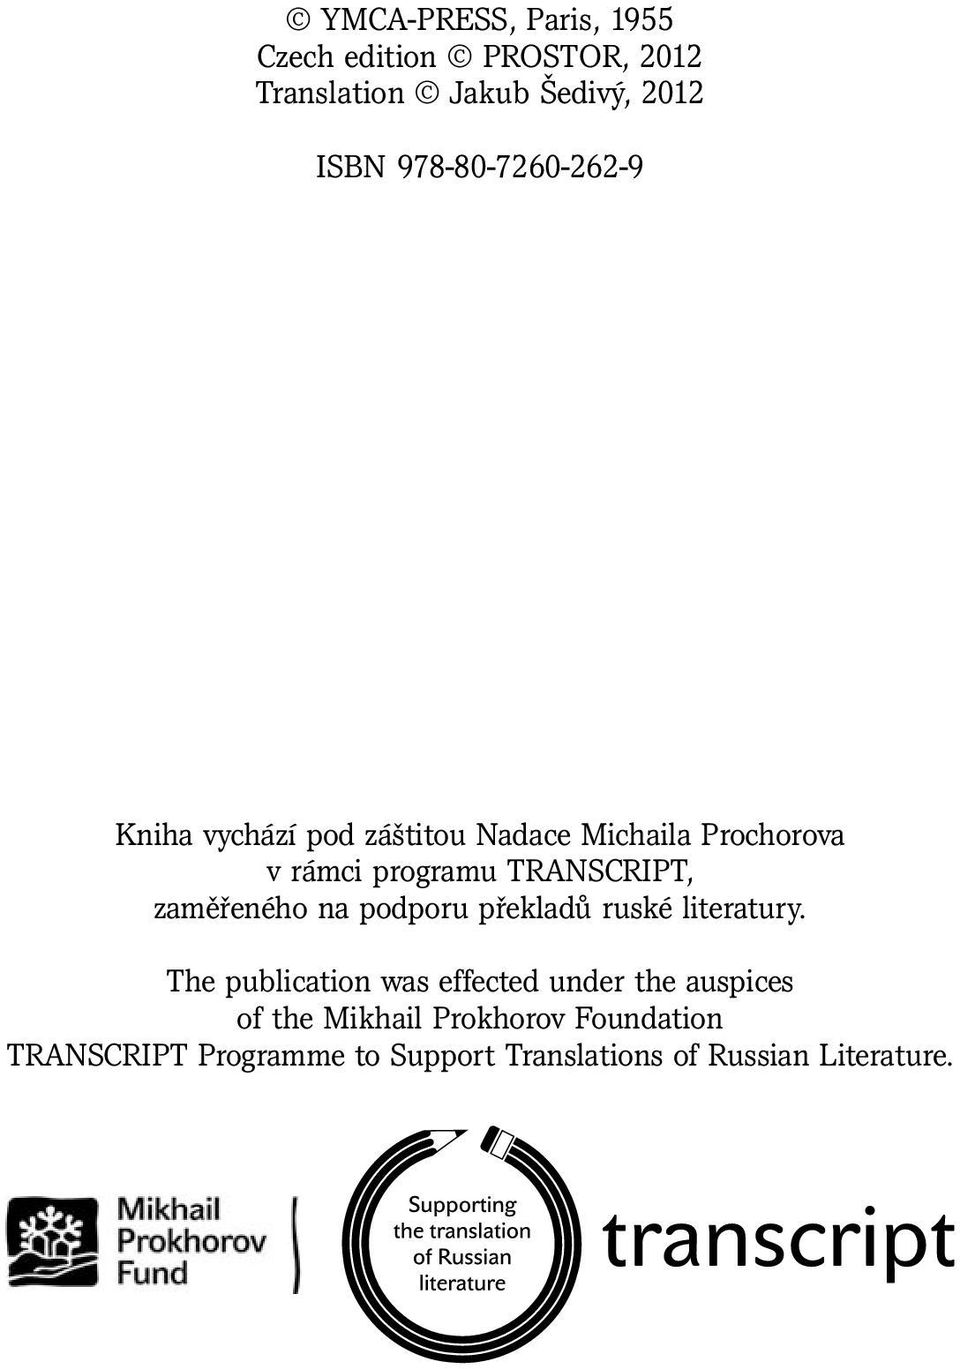 TRANSCRIPT, zaměřeného na podporu překladů ruské literatury.